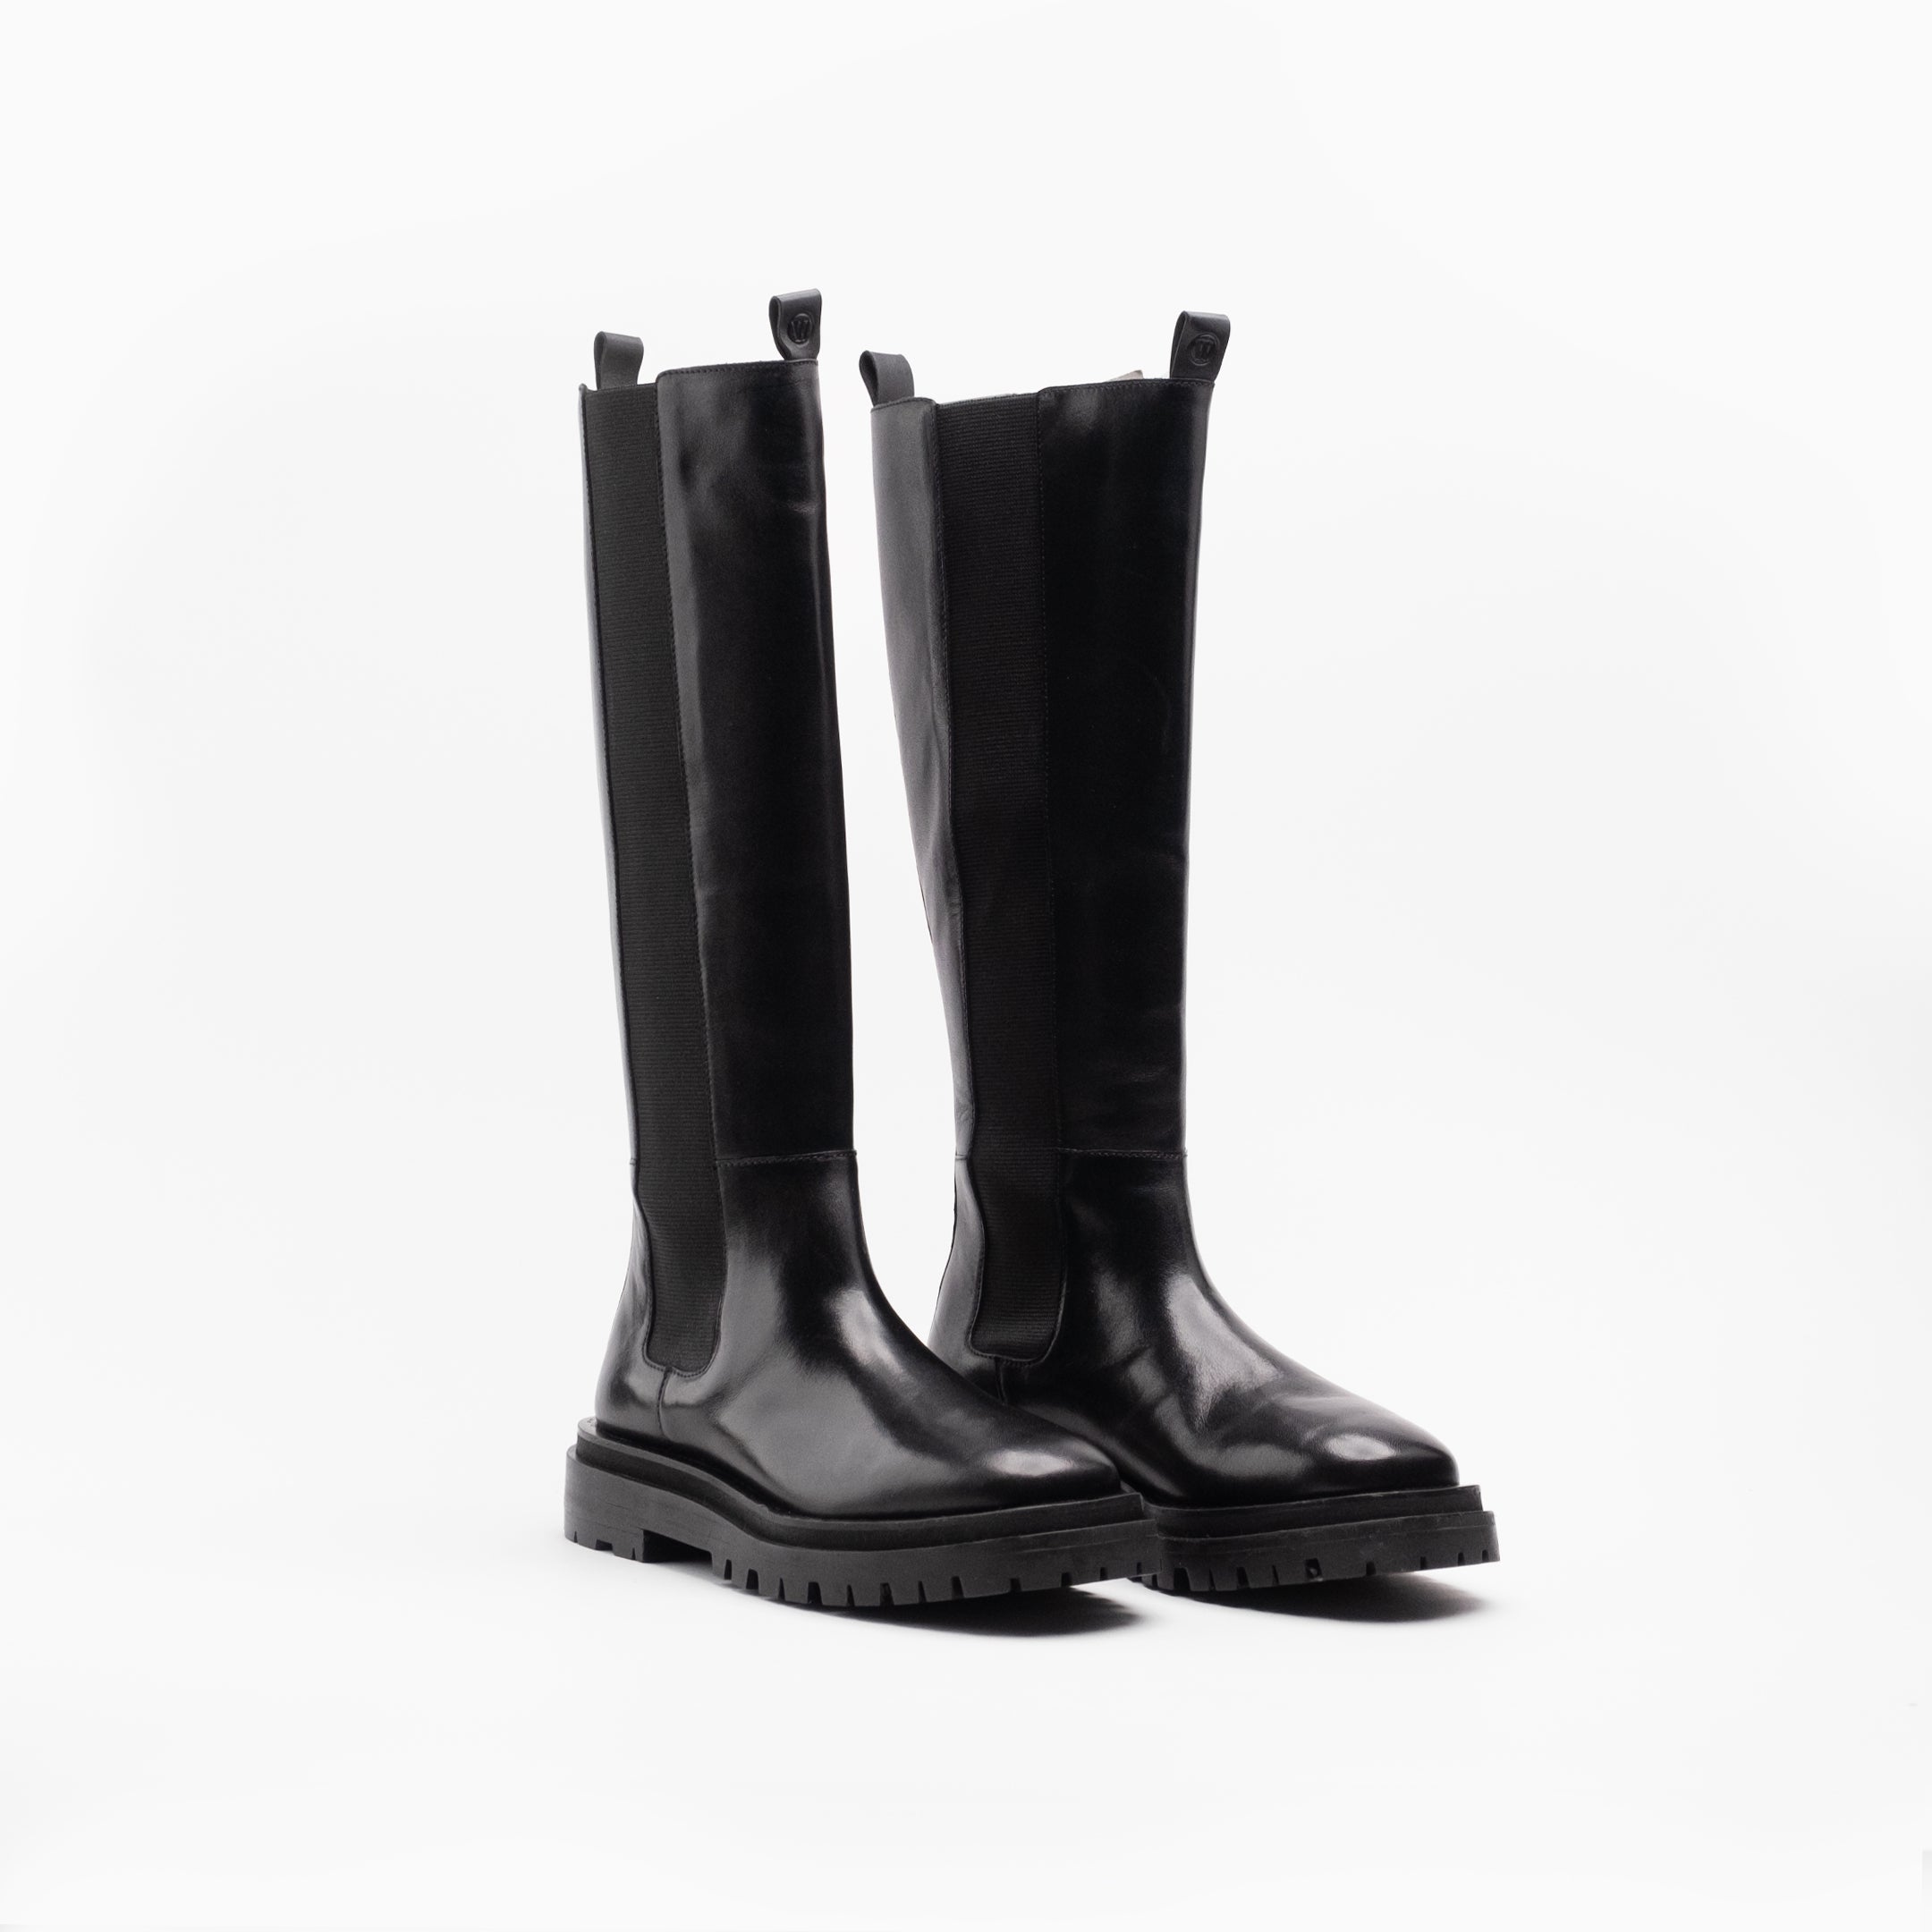 Walk London Women's Dana Tall Chelsea Boot in Black Leather